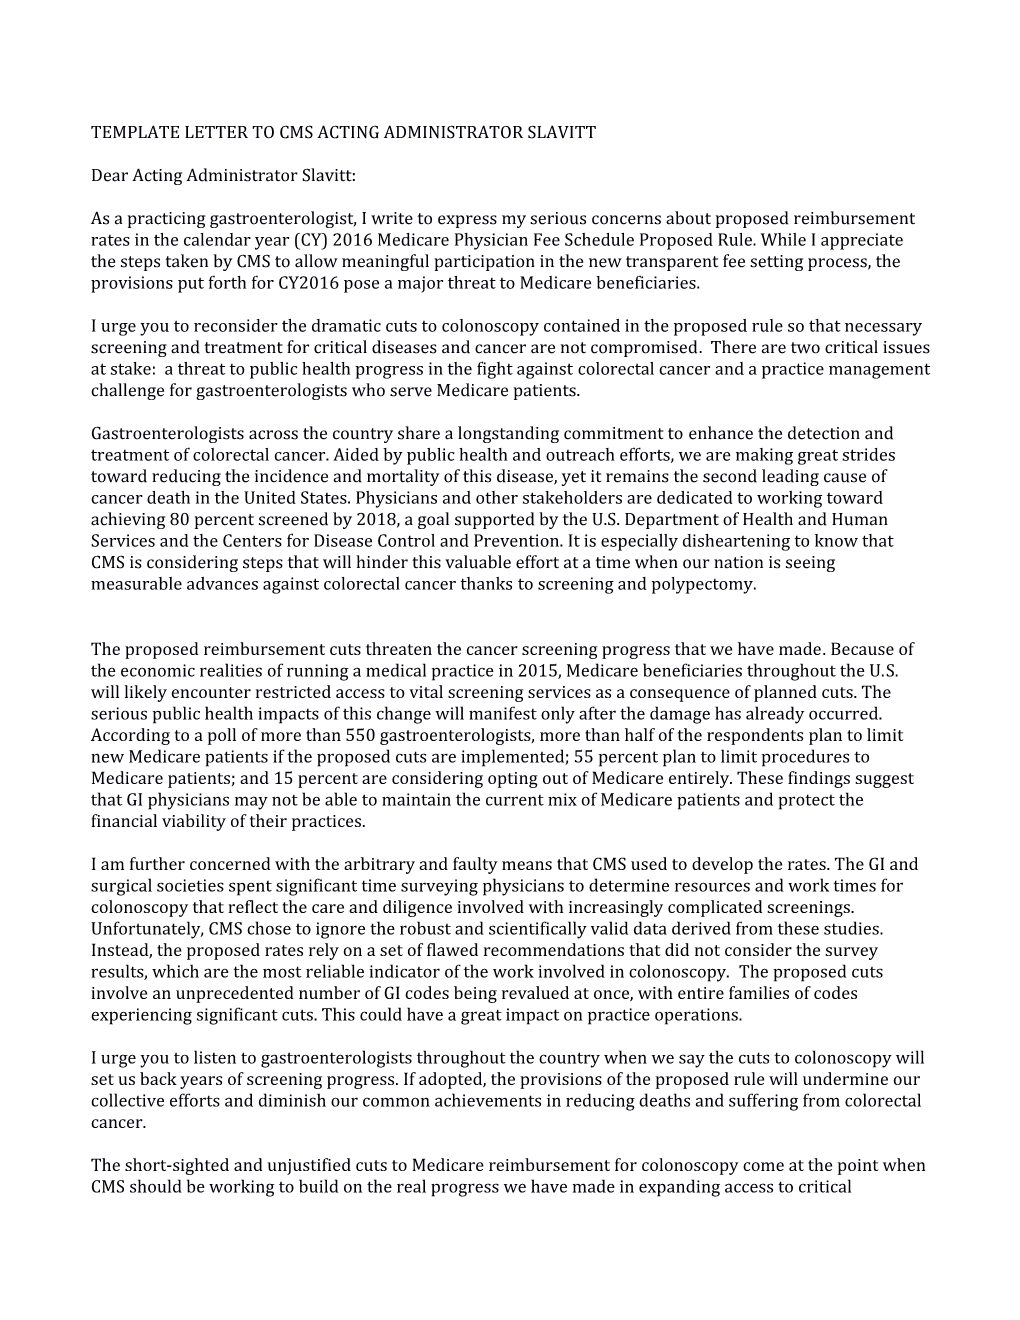 Template Letter to Cms Acting Administrator Slavitt